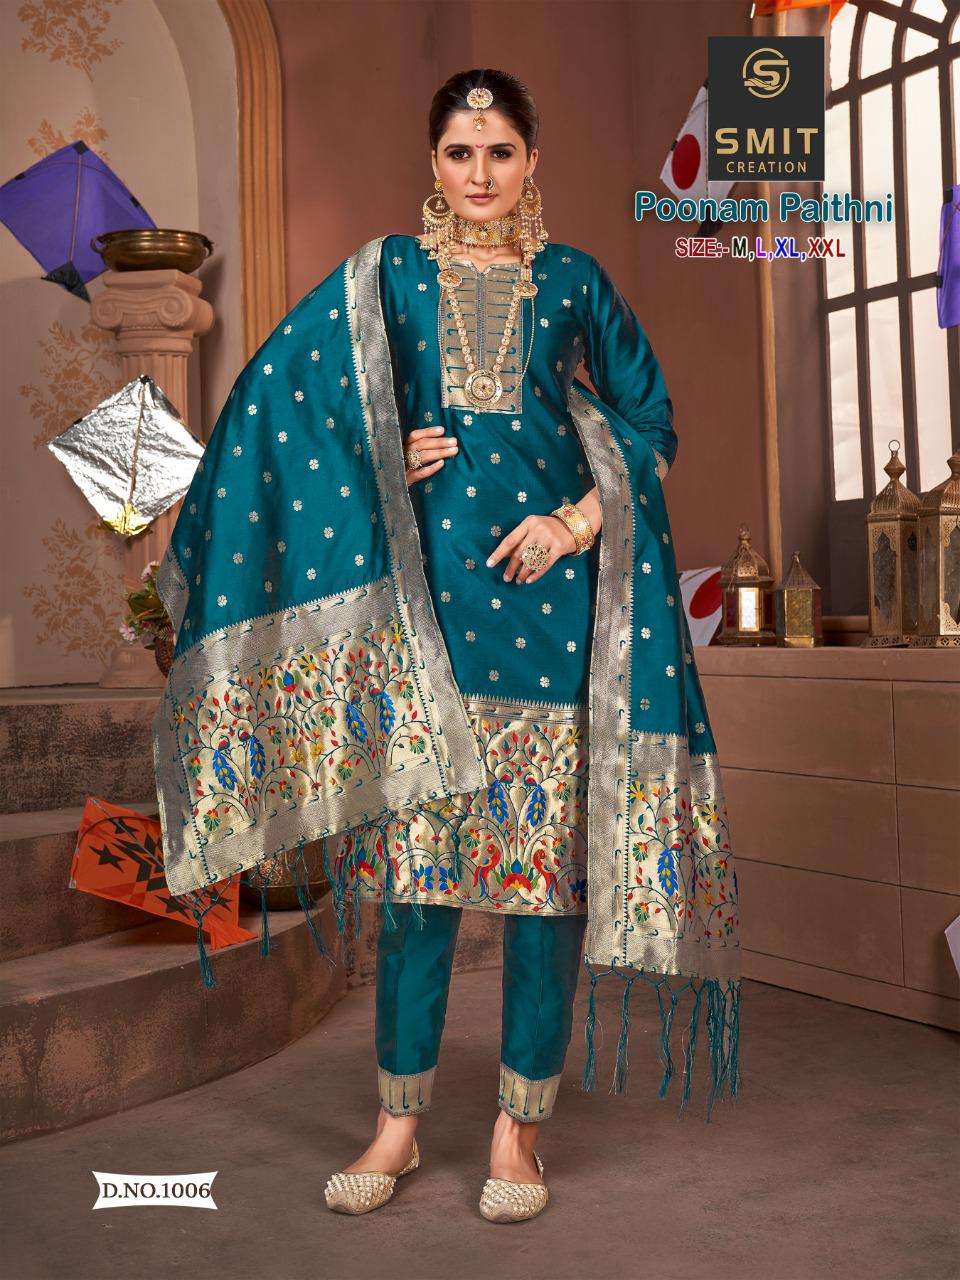 Find Paithani dress by Priya Chaugule near me | Pirangut, Pune, Maharashtra  | Anar B2B Business App